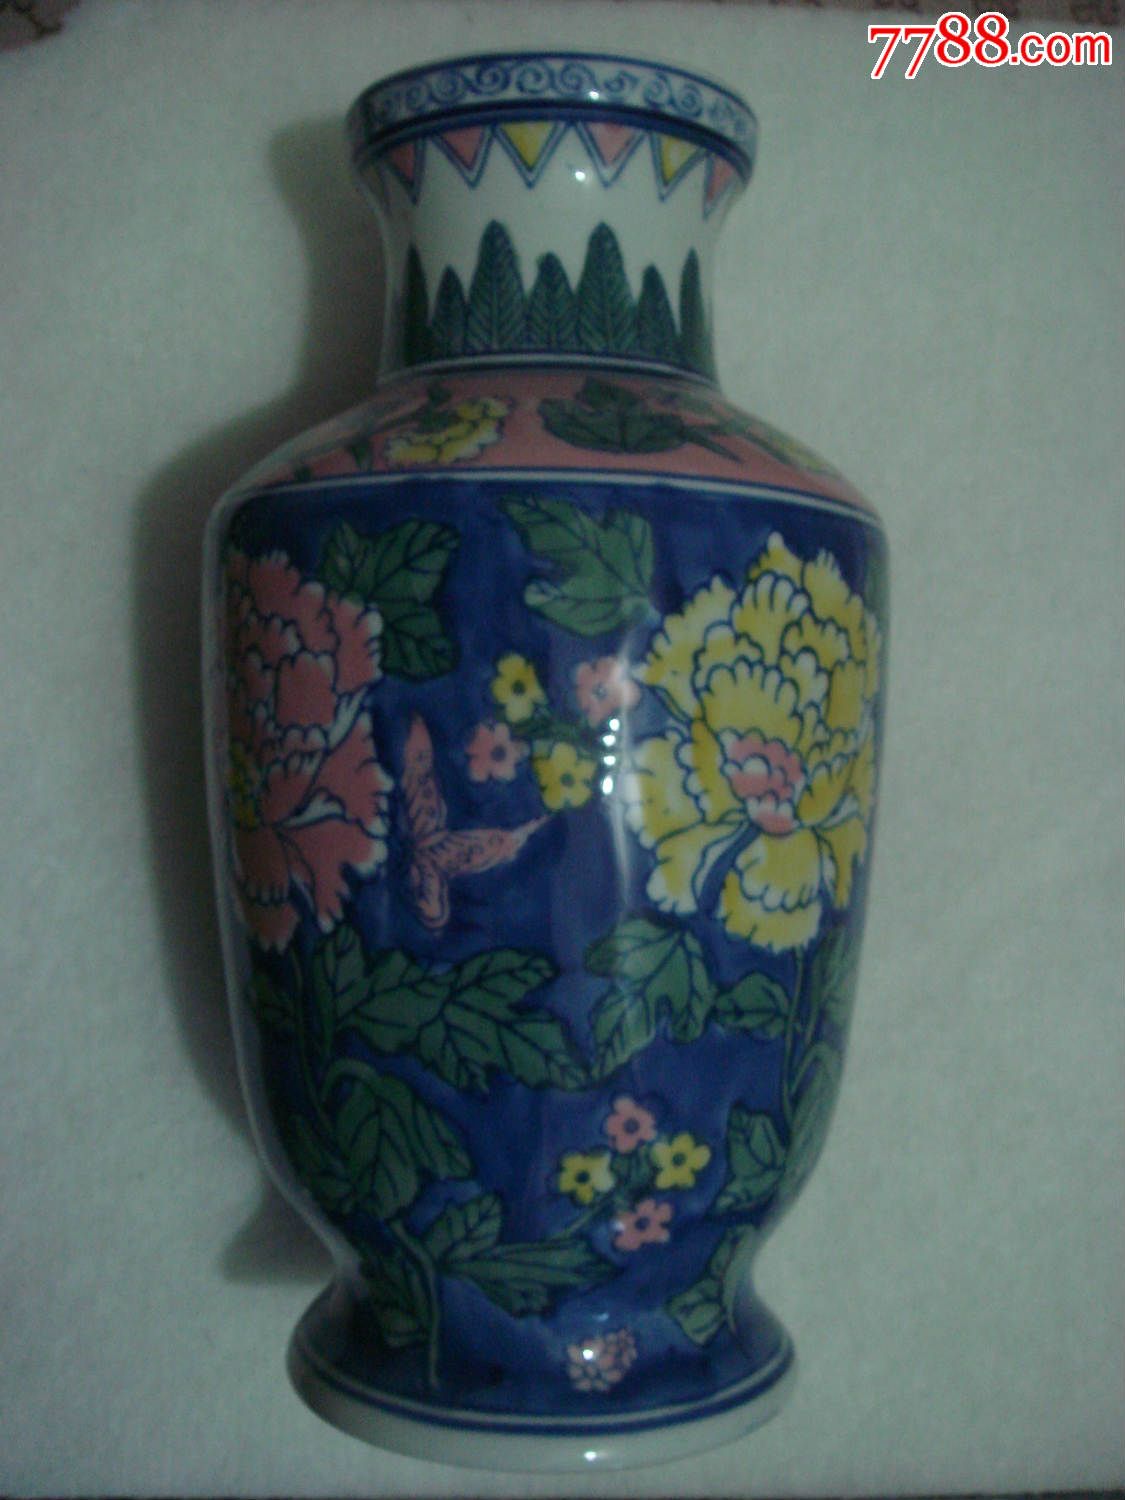 手绘牡丹瓶--南艺厂-价格:300元-se33645993-